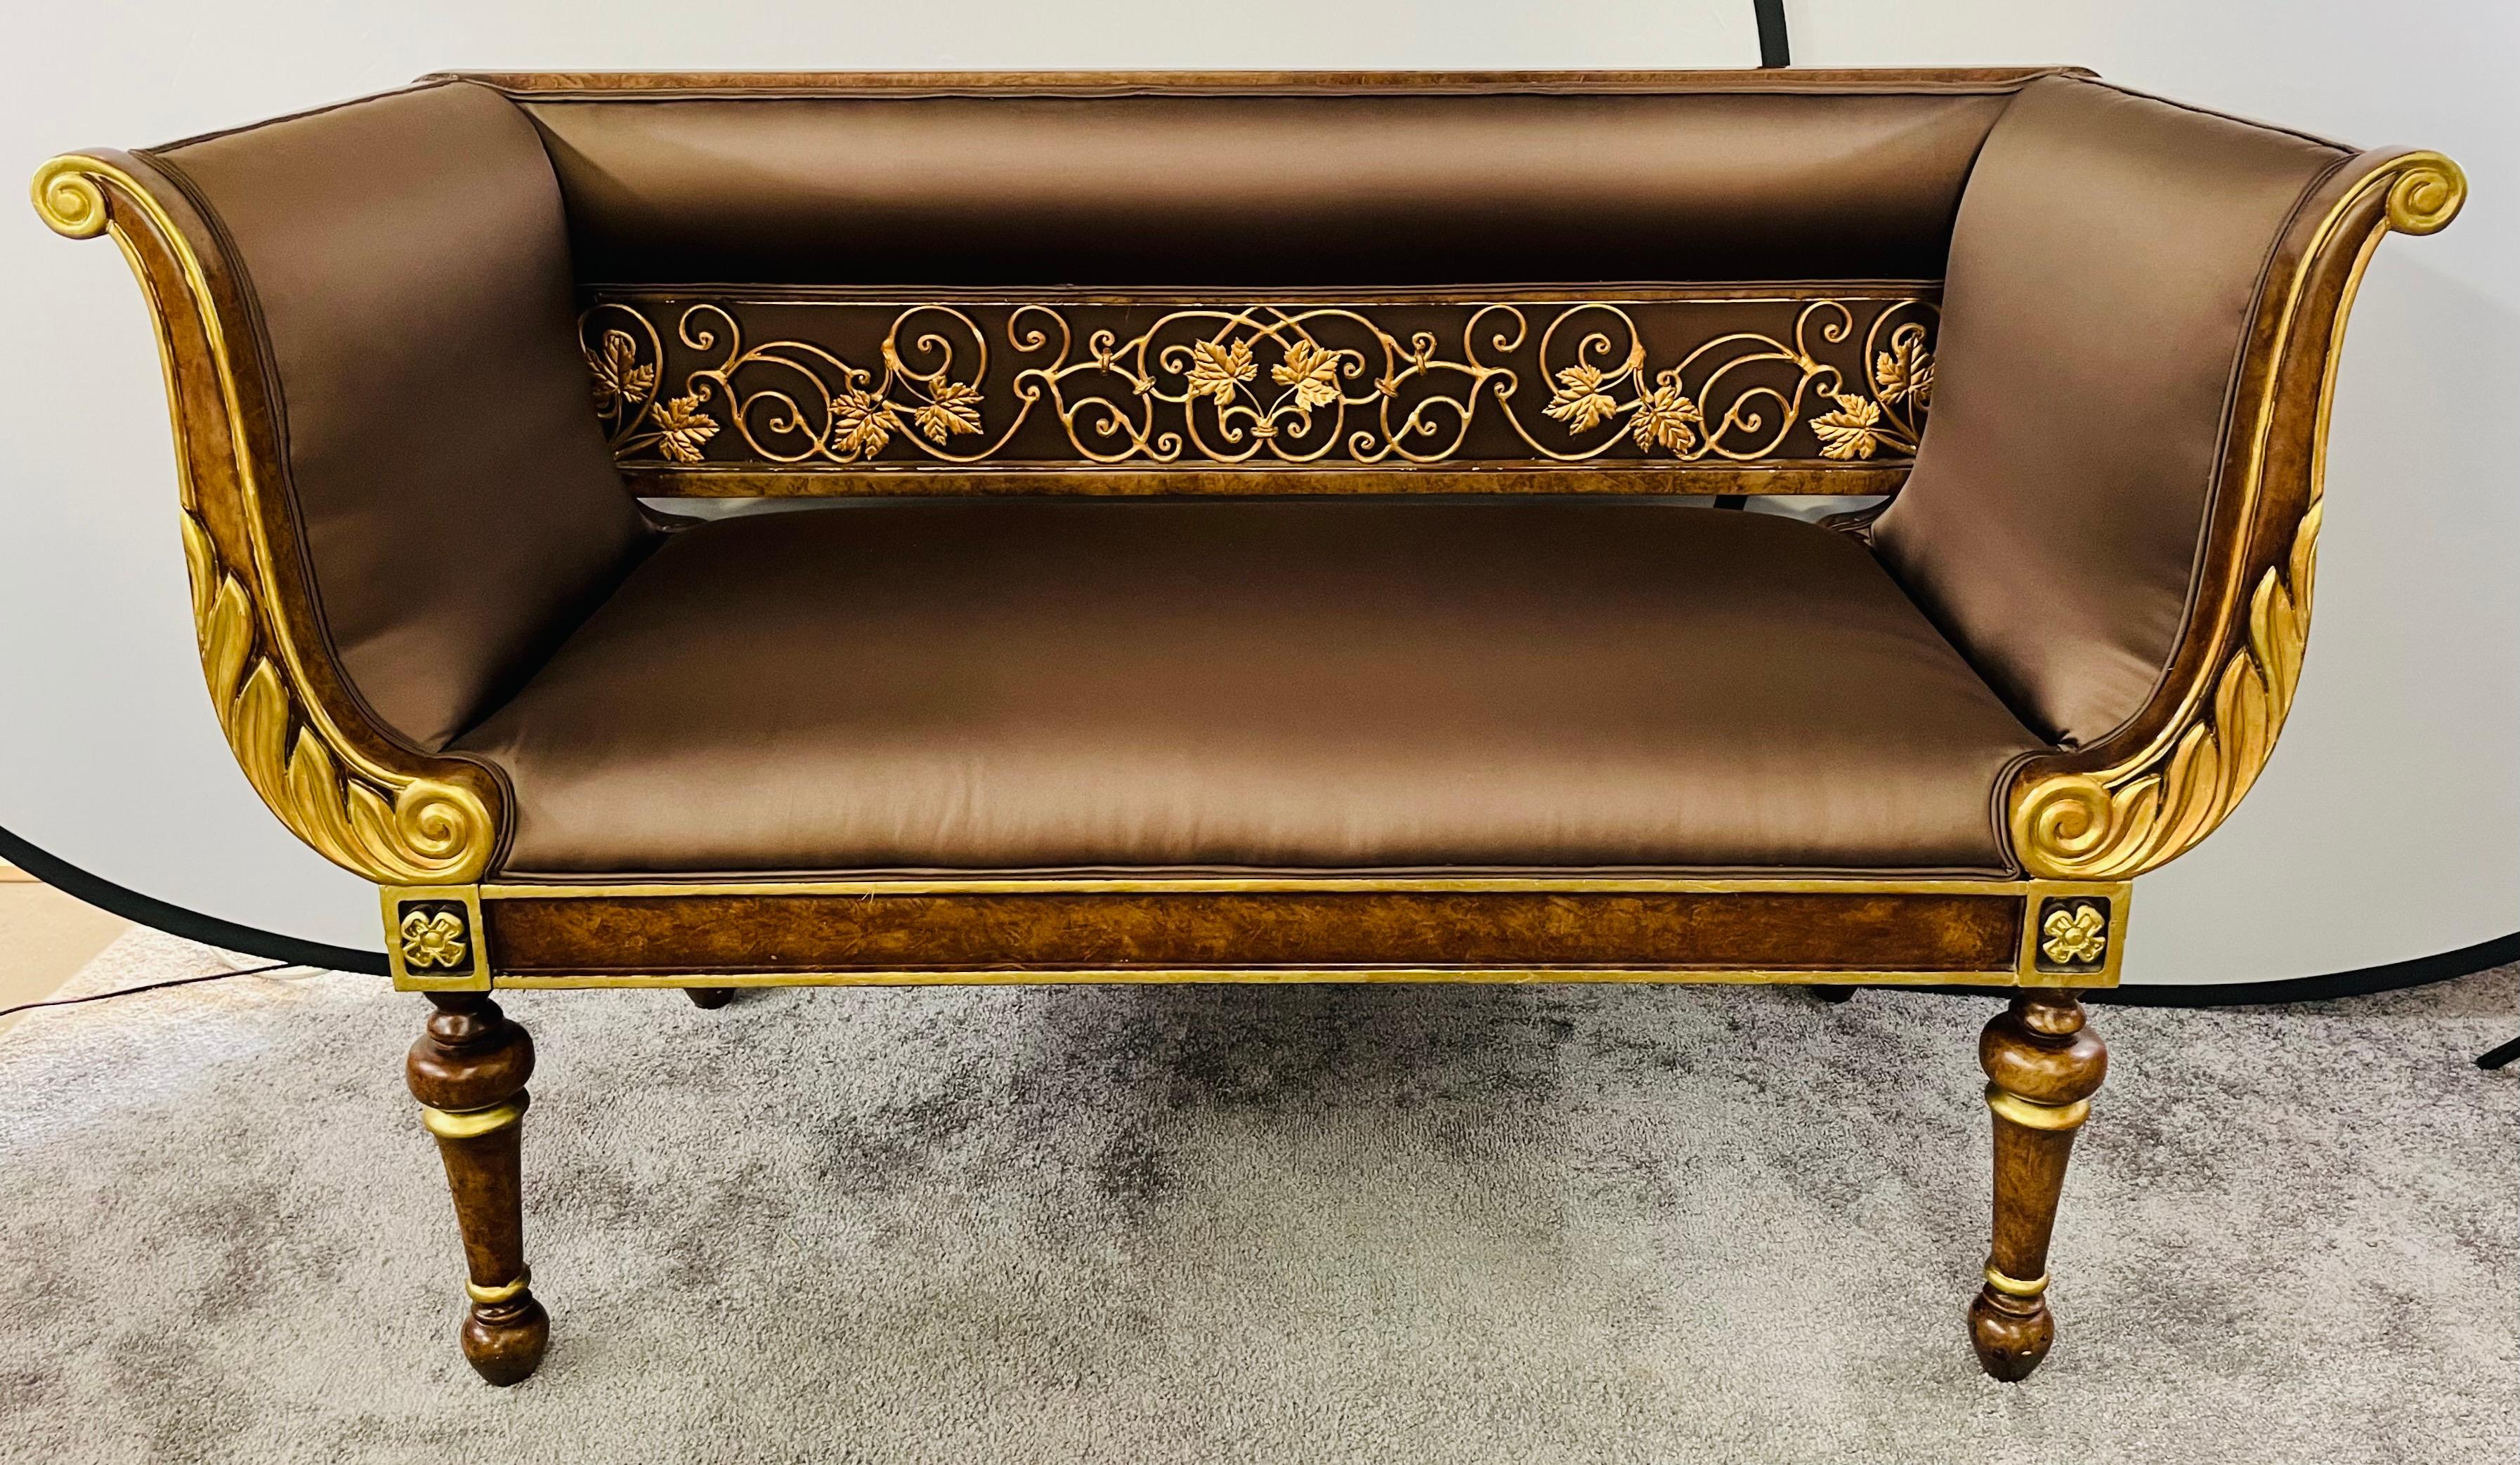 Cette causeuse, ce canapé ou ce sofa vénitien italien du XIXe siècle embellit votre espace. La sculpture du cadre est une véritable œuvre d'art, avec une rampe de fines feuilles de bois sur le dossier du canapé et des motifs de volutes et d'ailes